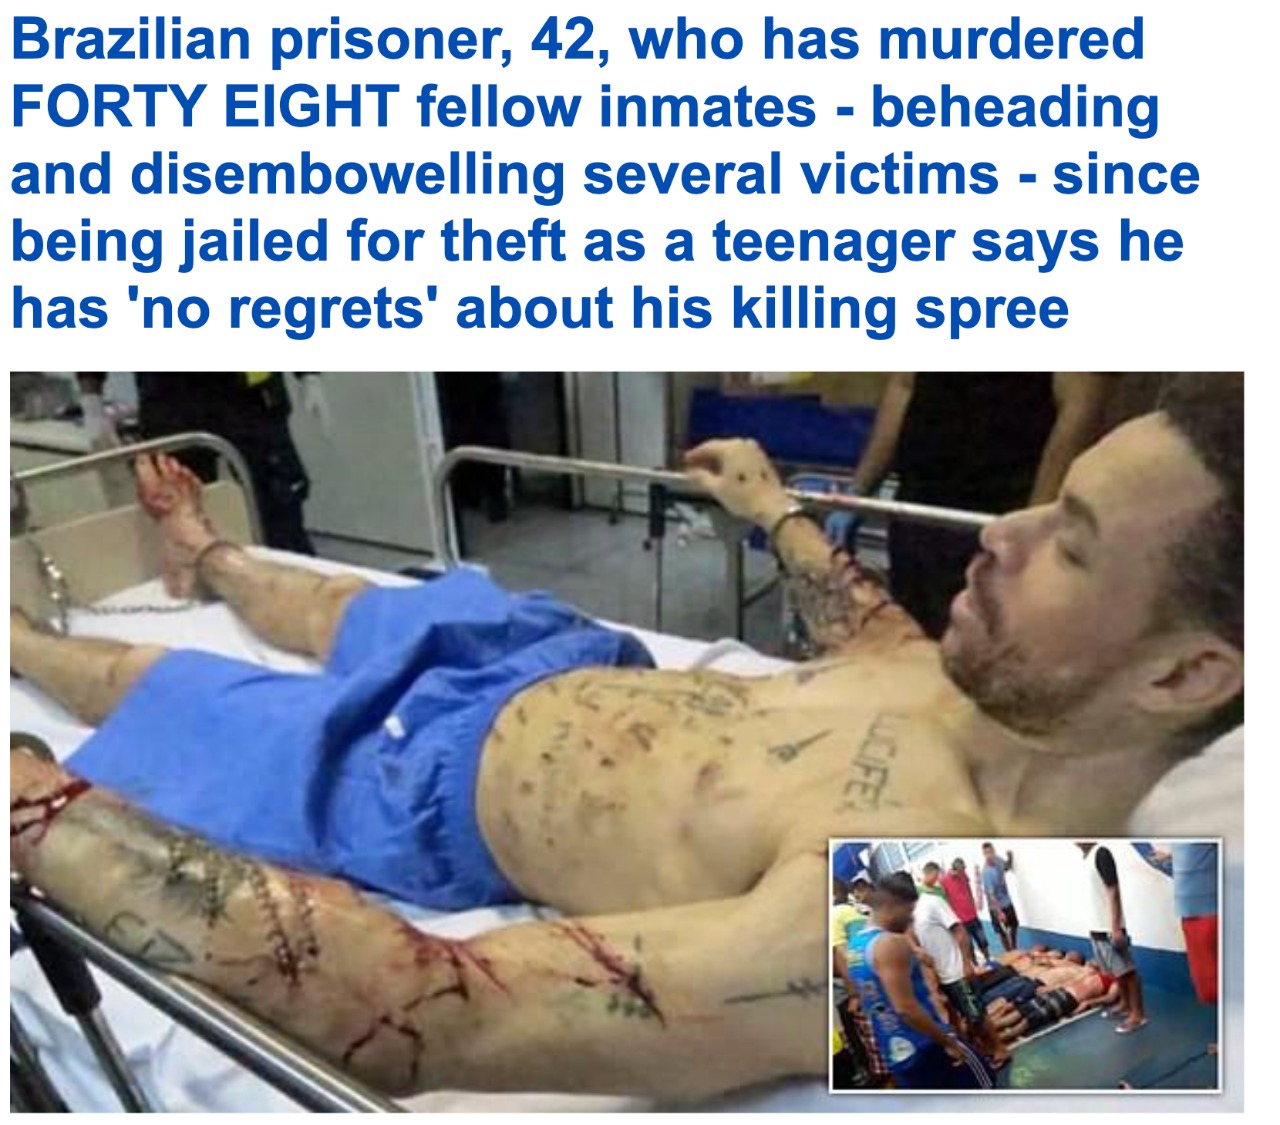 "لص" تحول إلى شخص دموي وقتل 48 سجينا.. وهكذا فاجأ القاضي أثناء محاكمته - صور